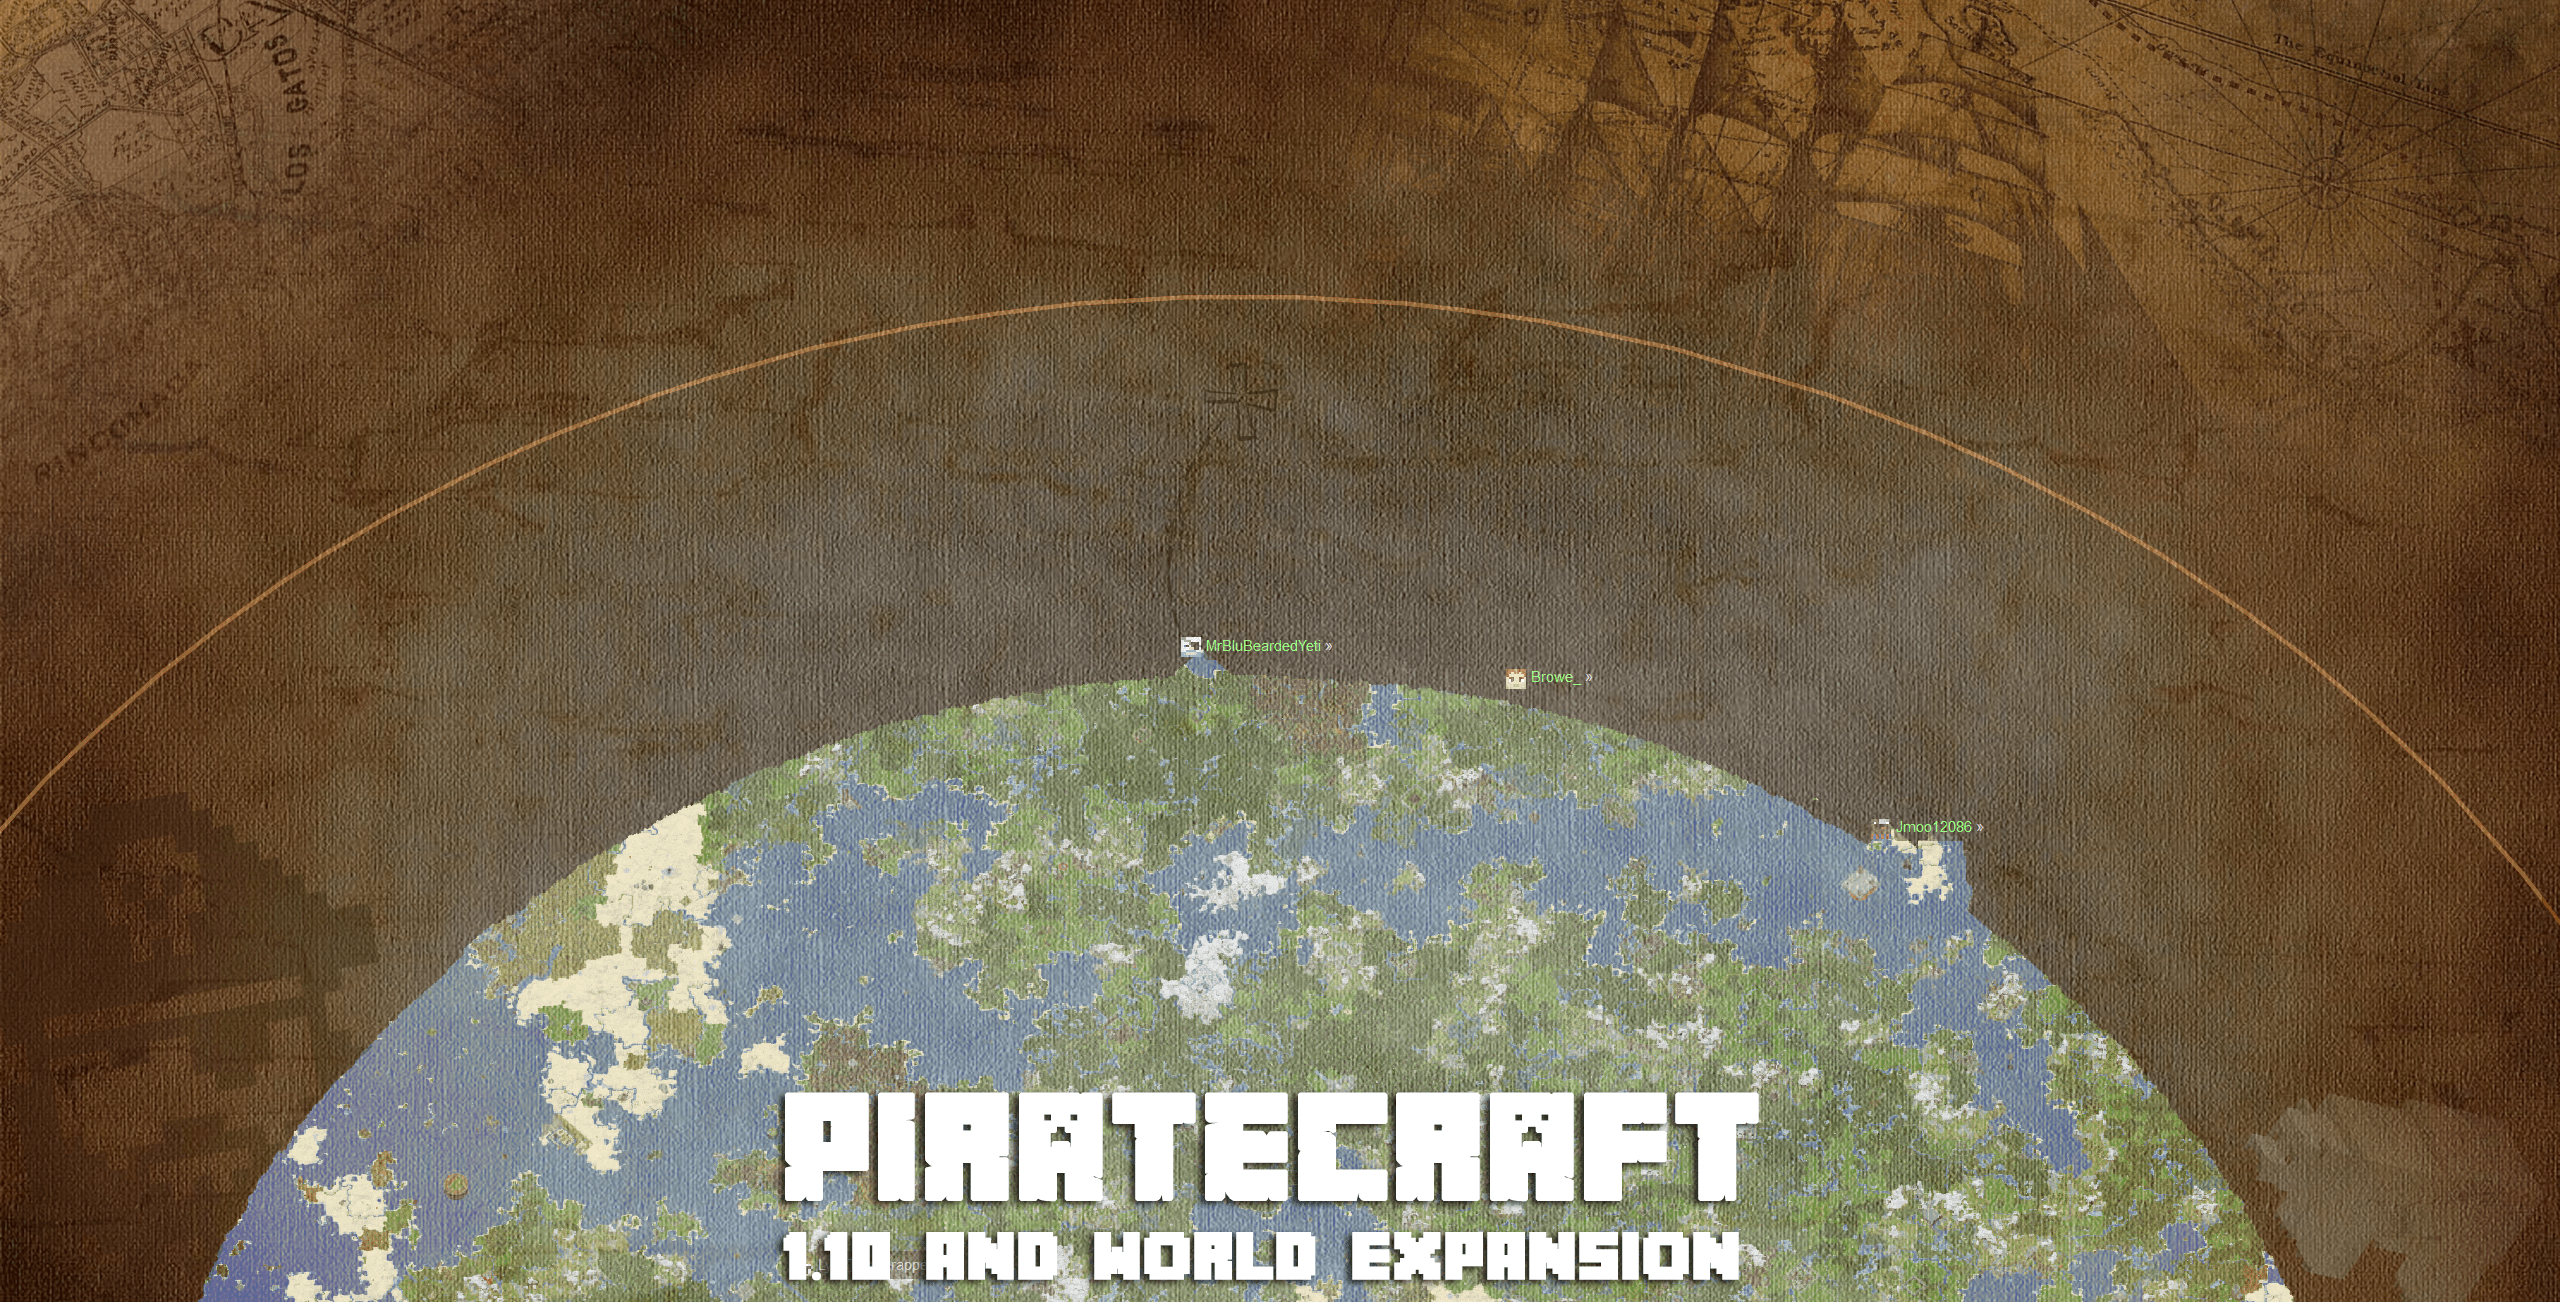 PirateCraft Minecraft 1.10.2 update and world expansion